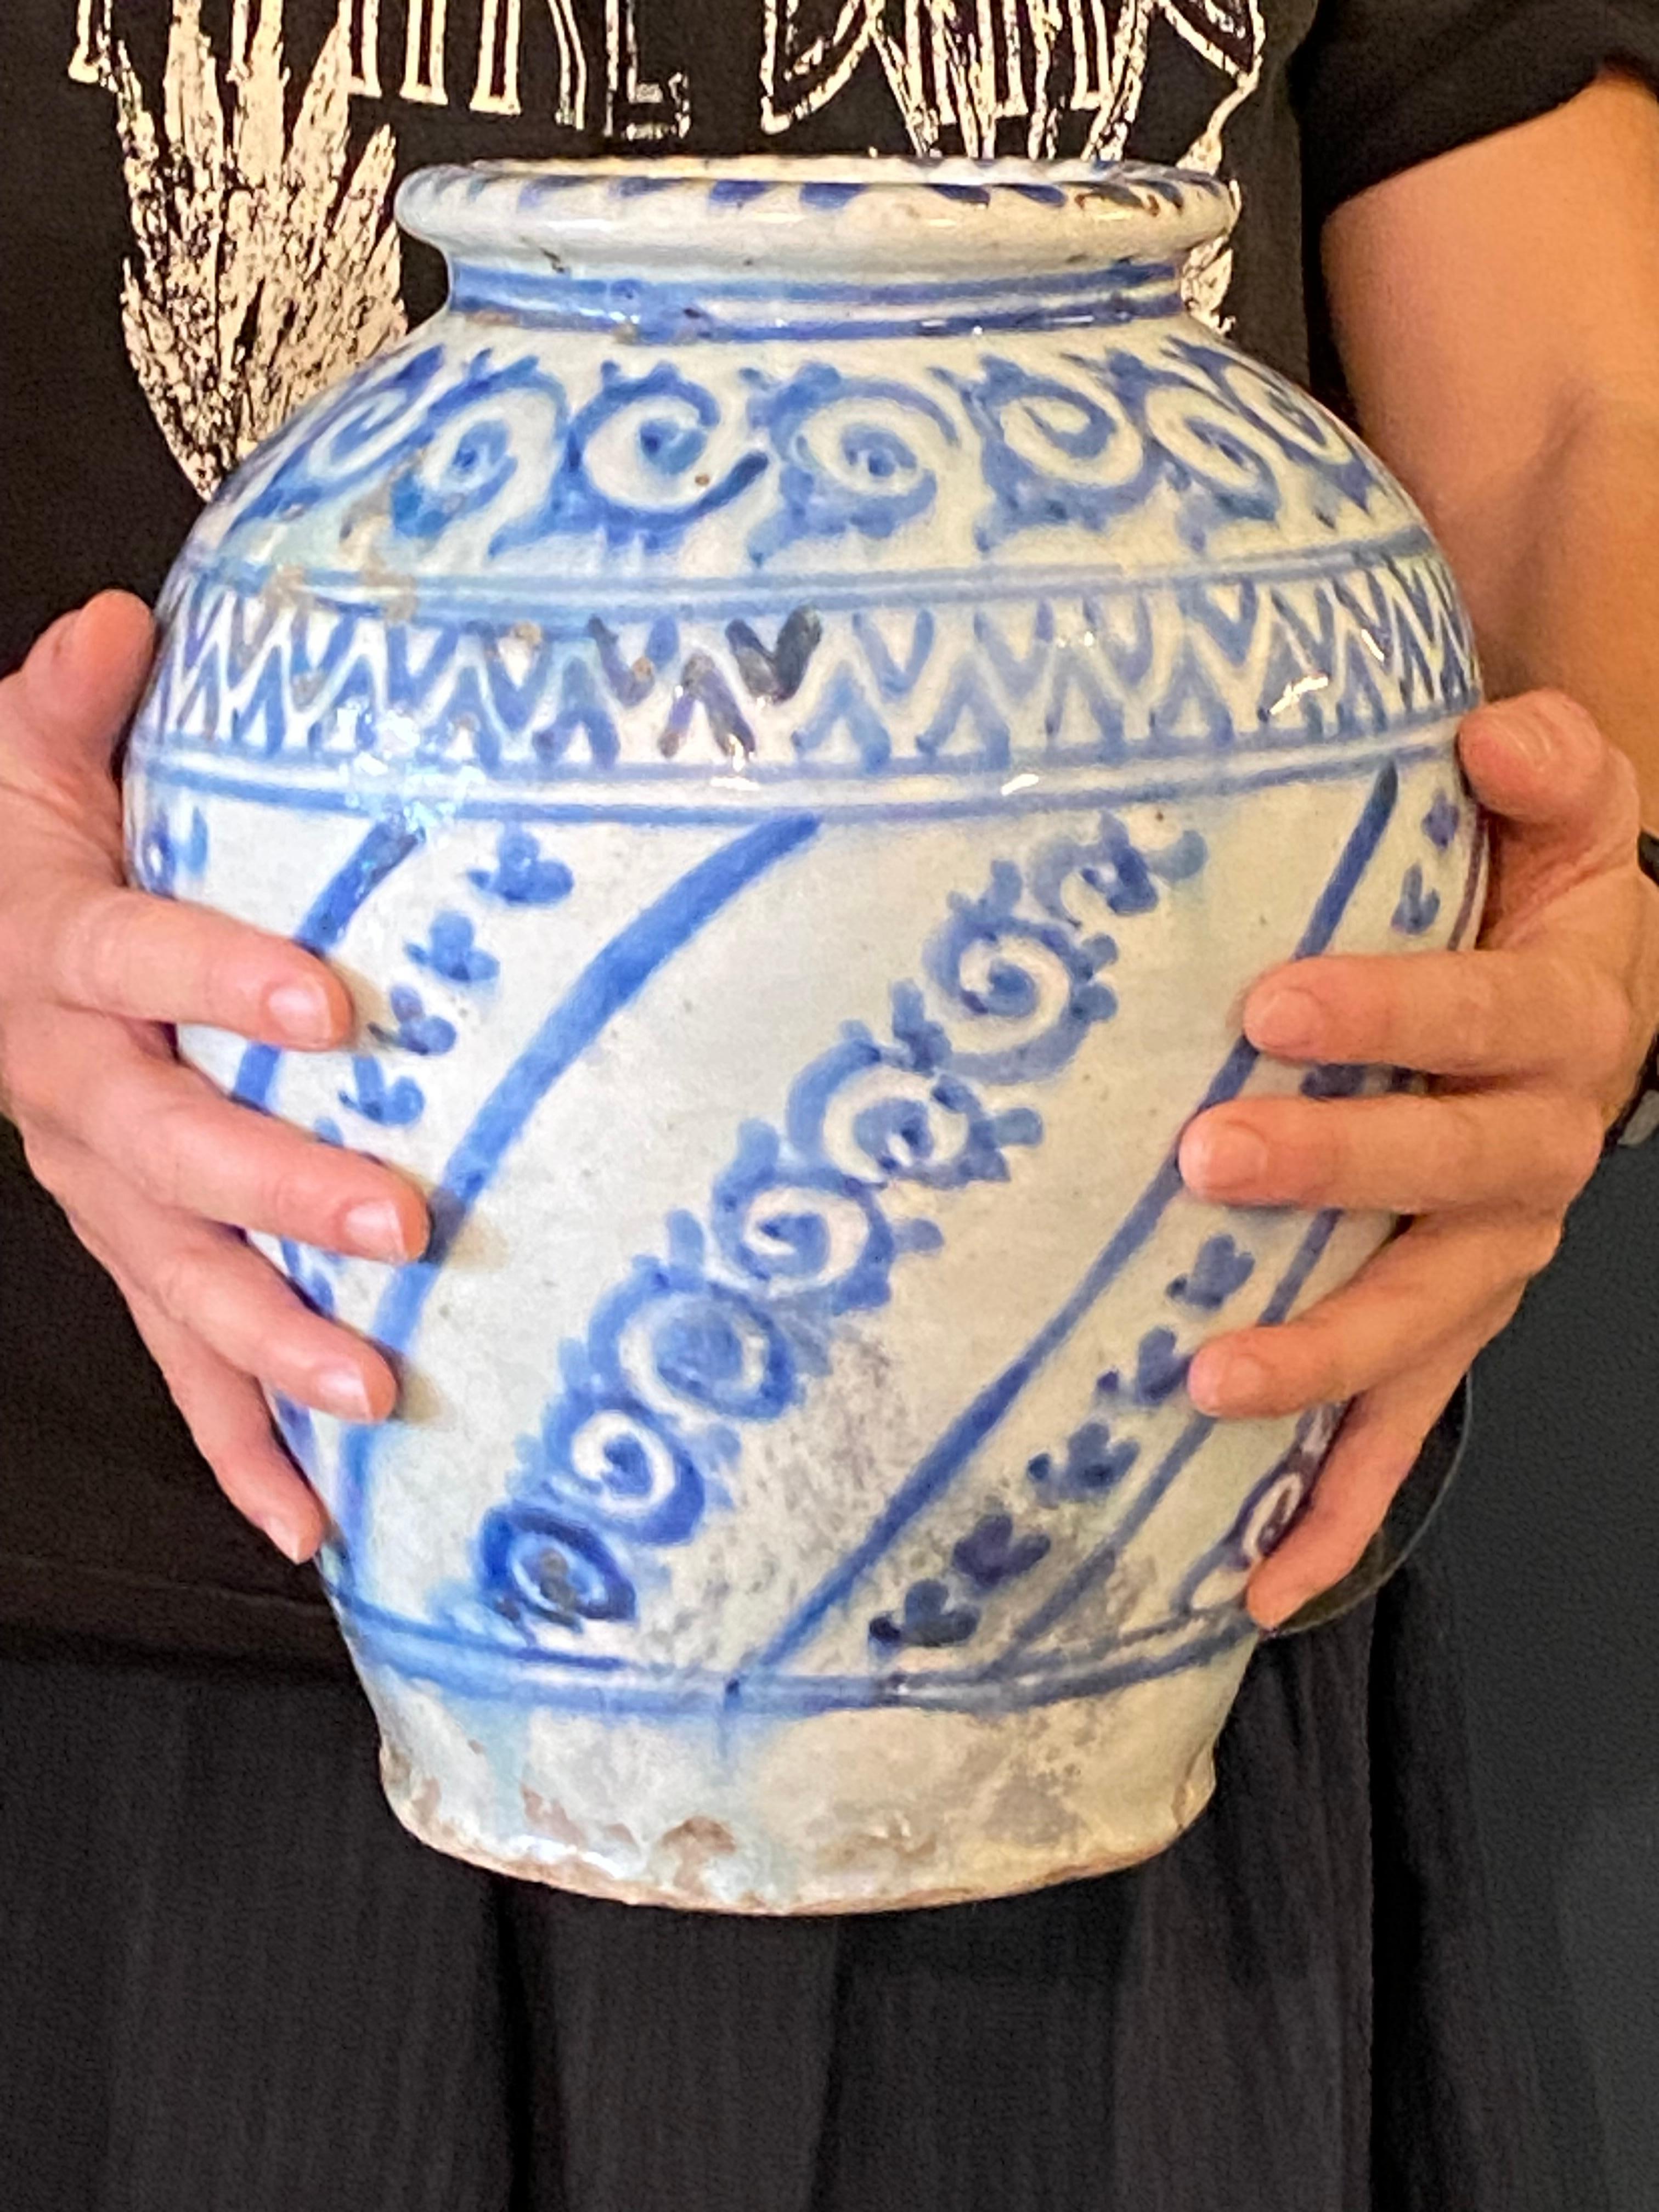 Très beau vase balustre safavide de la fin du XVIIe au début du XIXe siècle à décor tournant dans les tons bleus de motifs stylisés. En très bon état malgré un trou dans le fond. Légères rayures anciennes sur le col.